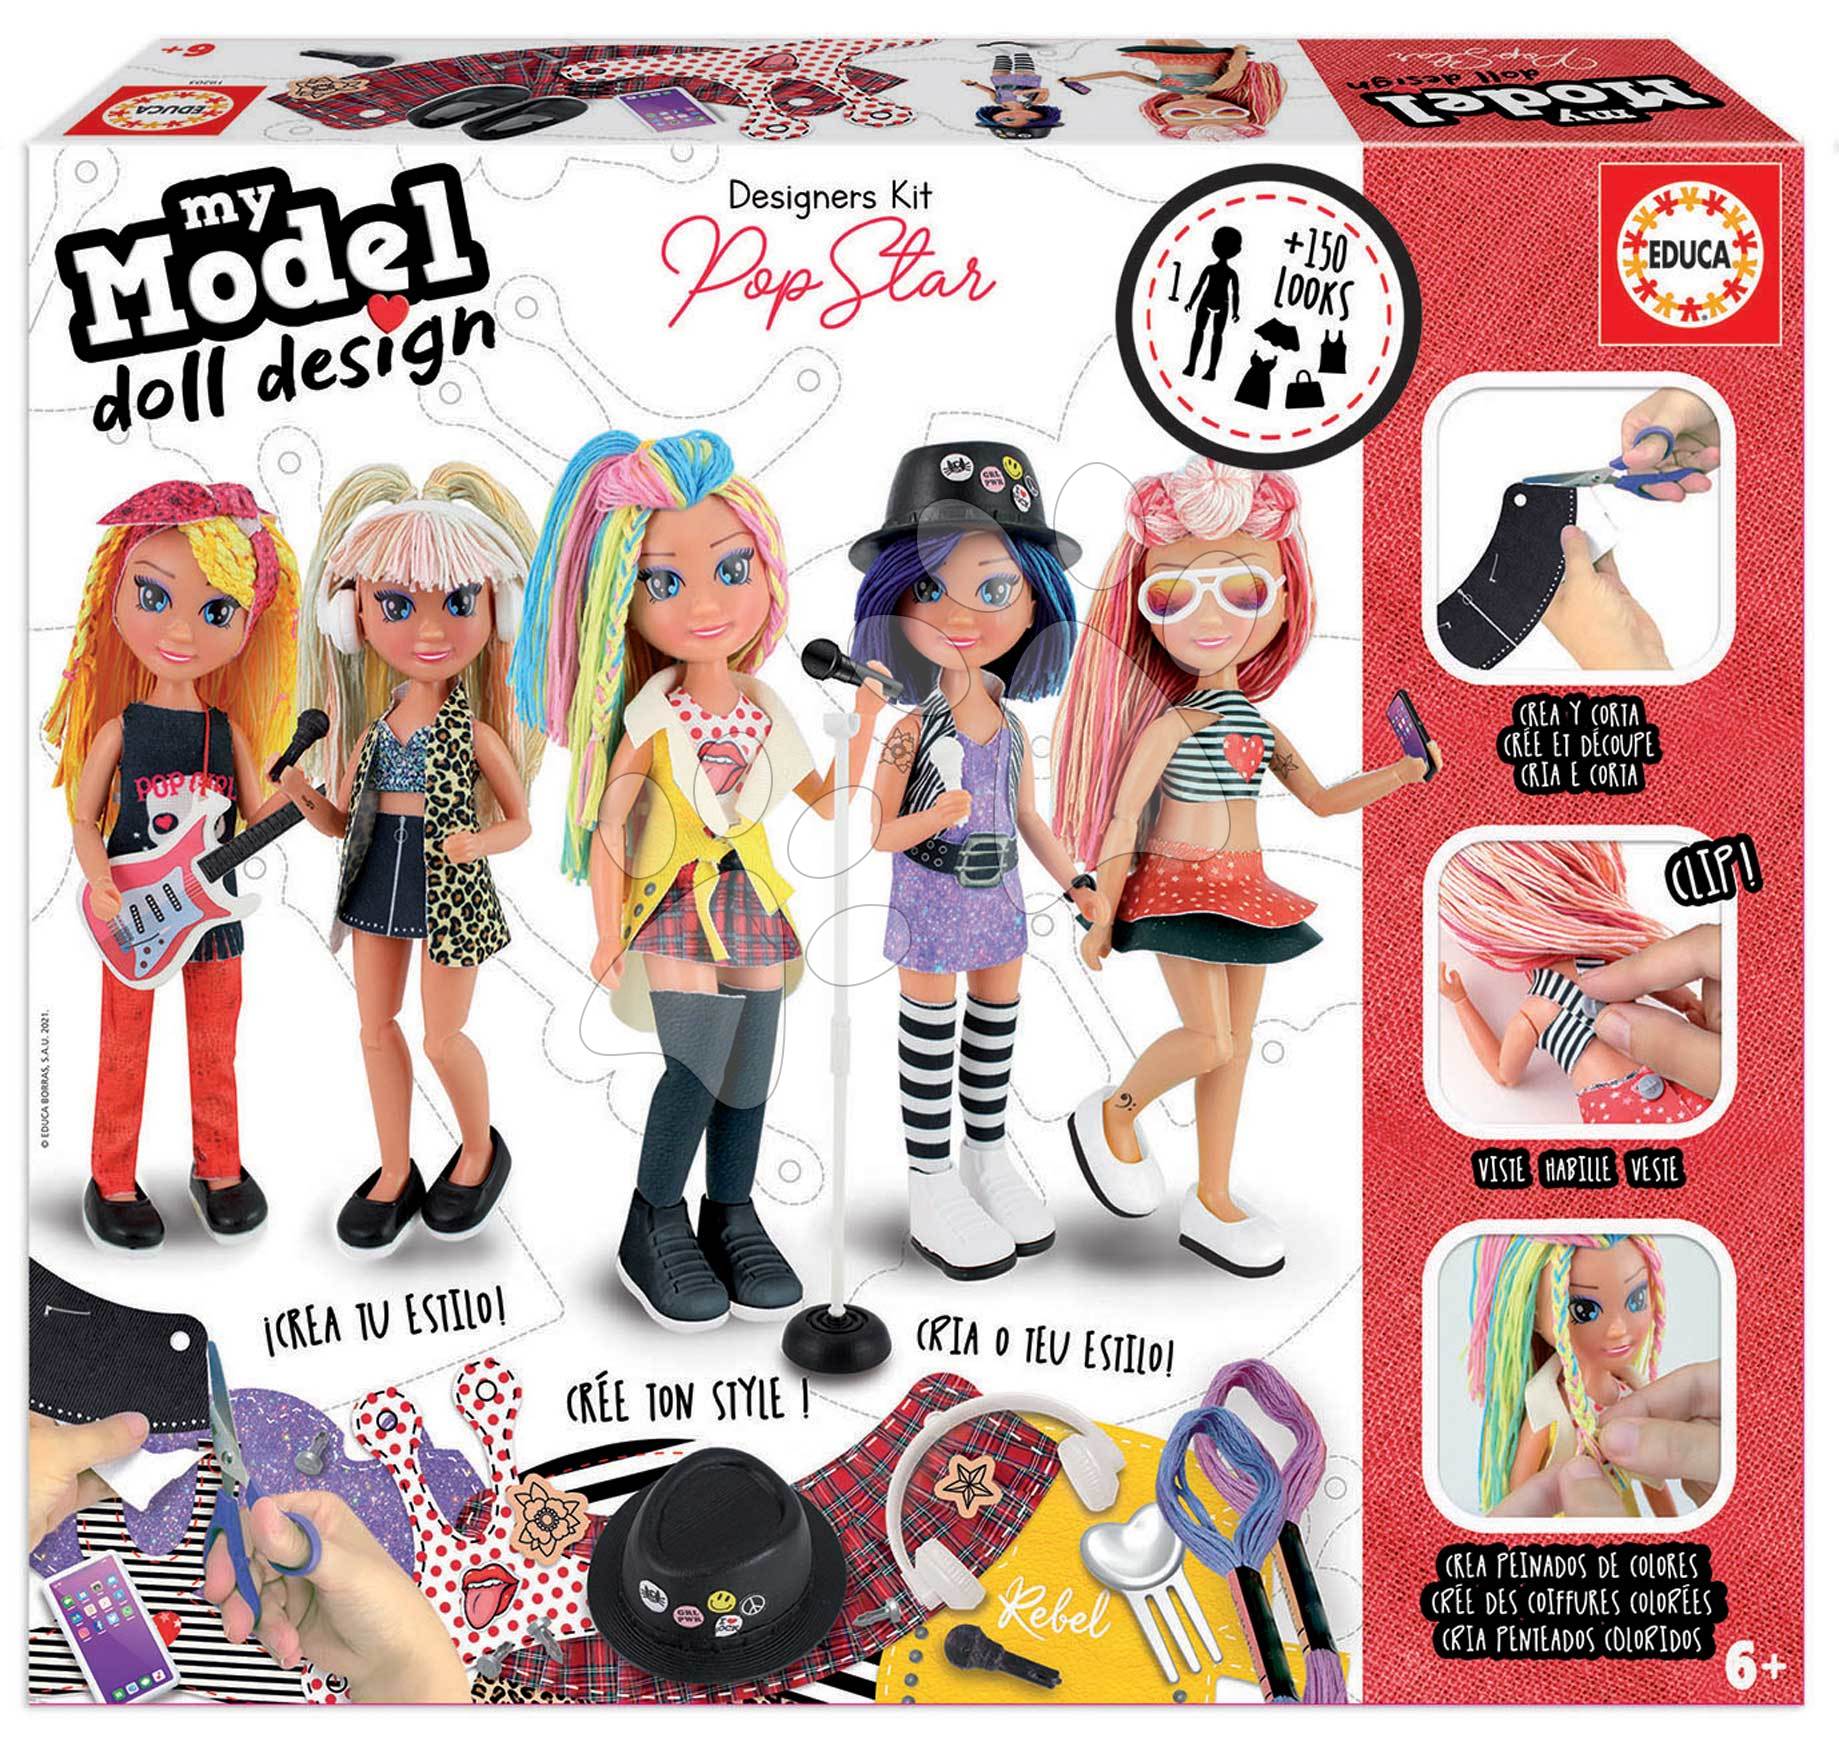 Kreatív alkotás My Model Doll Design Pop Star Educa készítsd el saját popsztár játékbabádat az 5 modellből 6 évtől